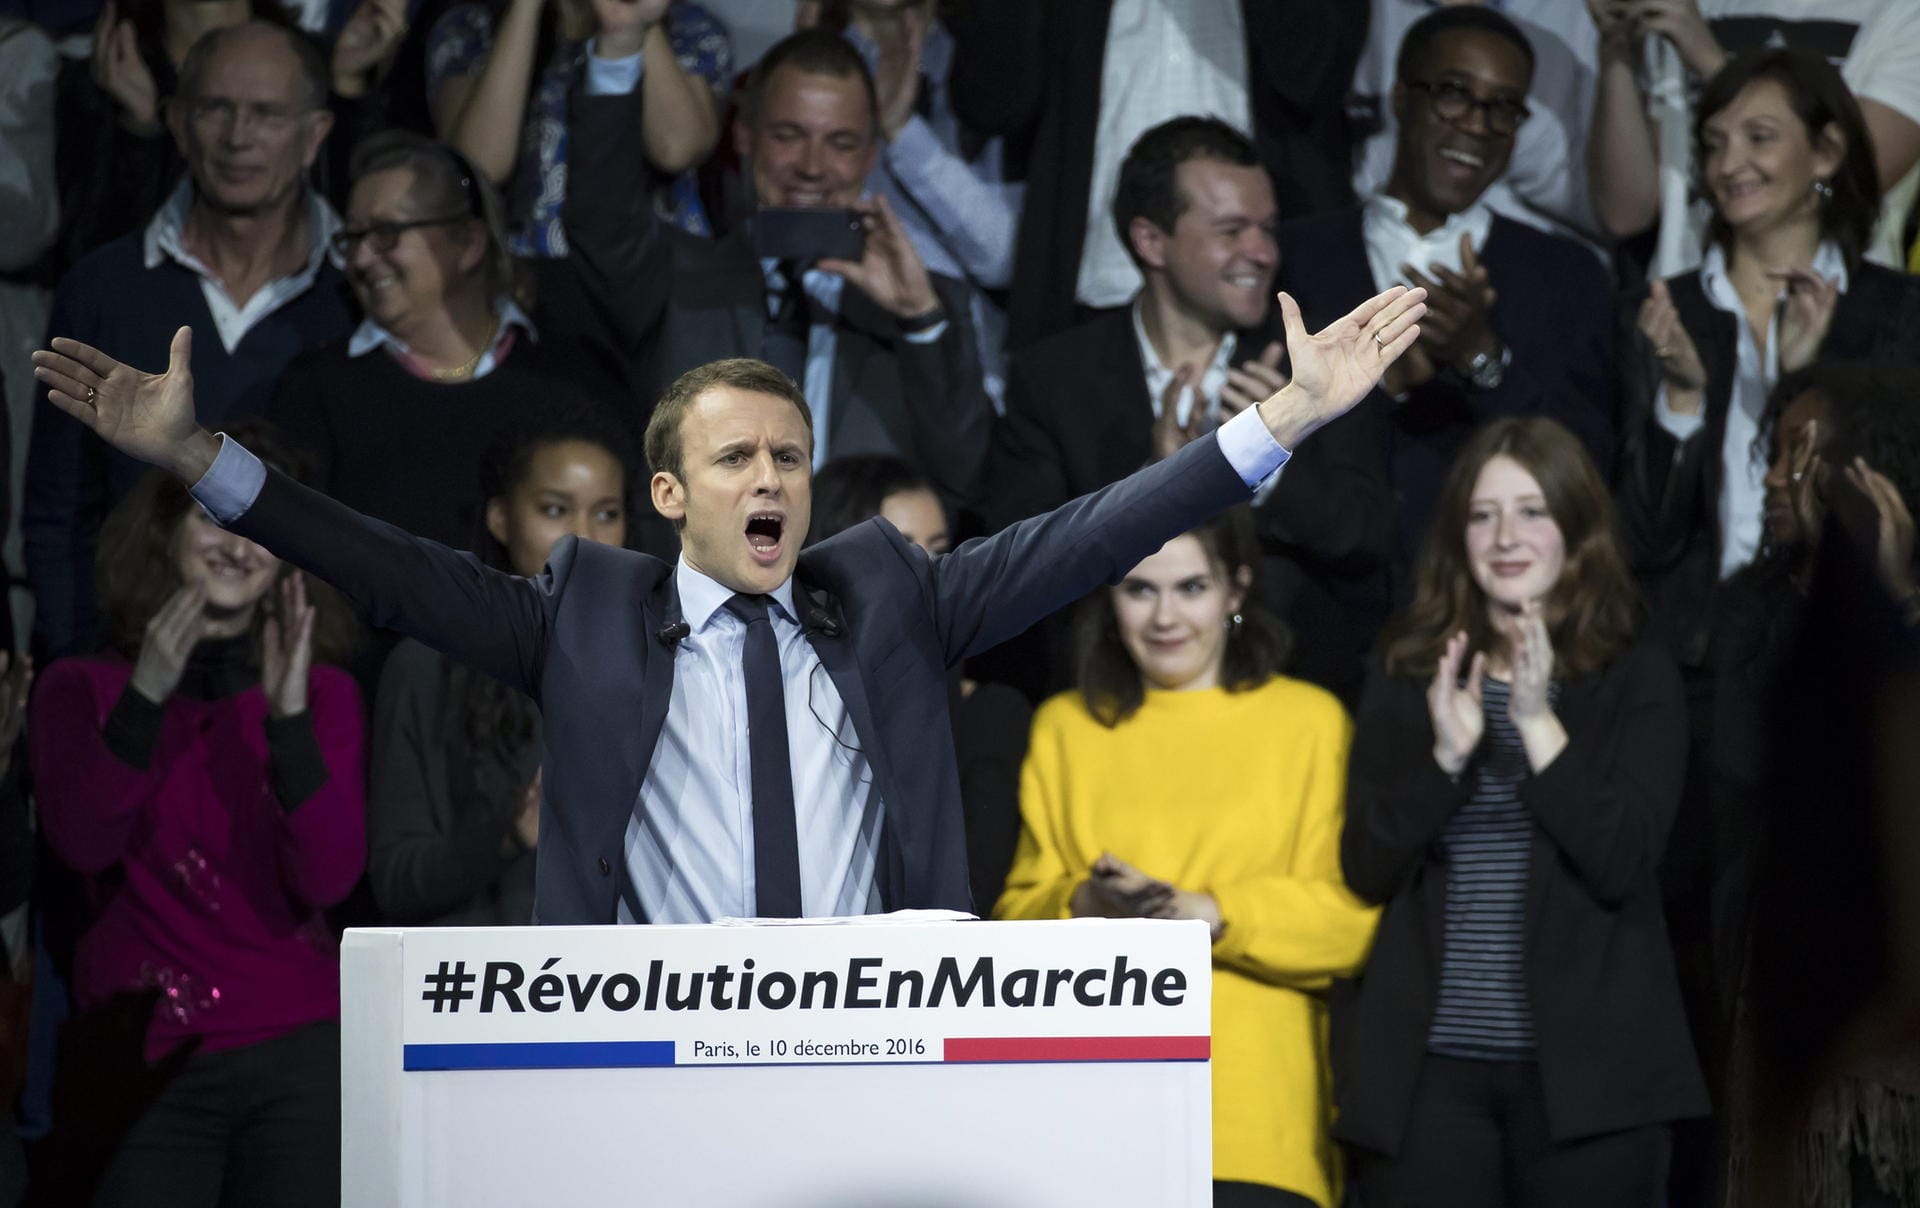 Macron hält eine Rede während seines politischen Wahlkampfs in Paris im Dezember 2016: Mit viel Ehrgeiz und Motivation präsentiert er seine pro-europäische und sozialliberale Politik. Dafür steht die von ihm 2016 gegründete Bewegung "En Marche".